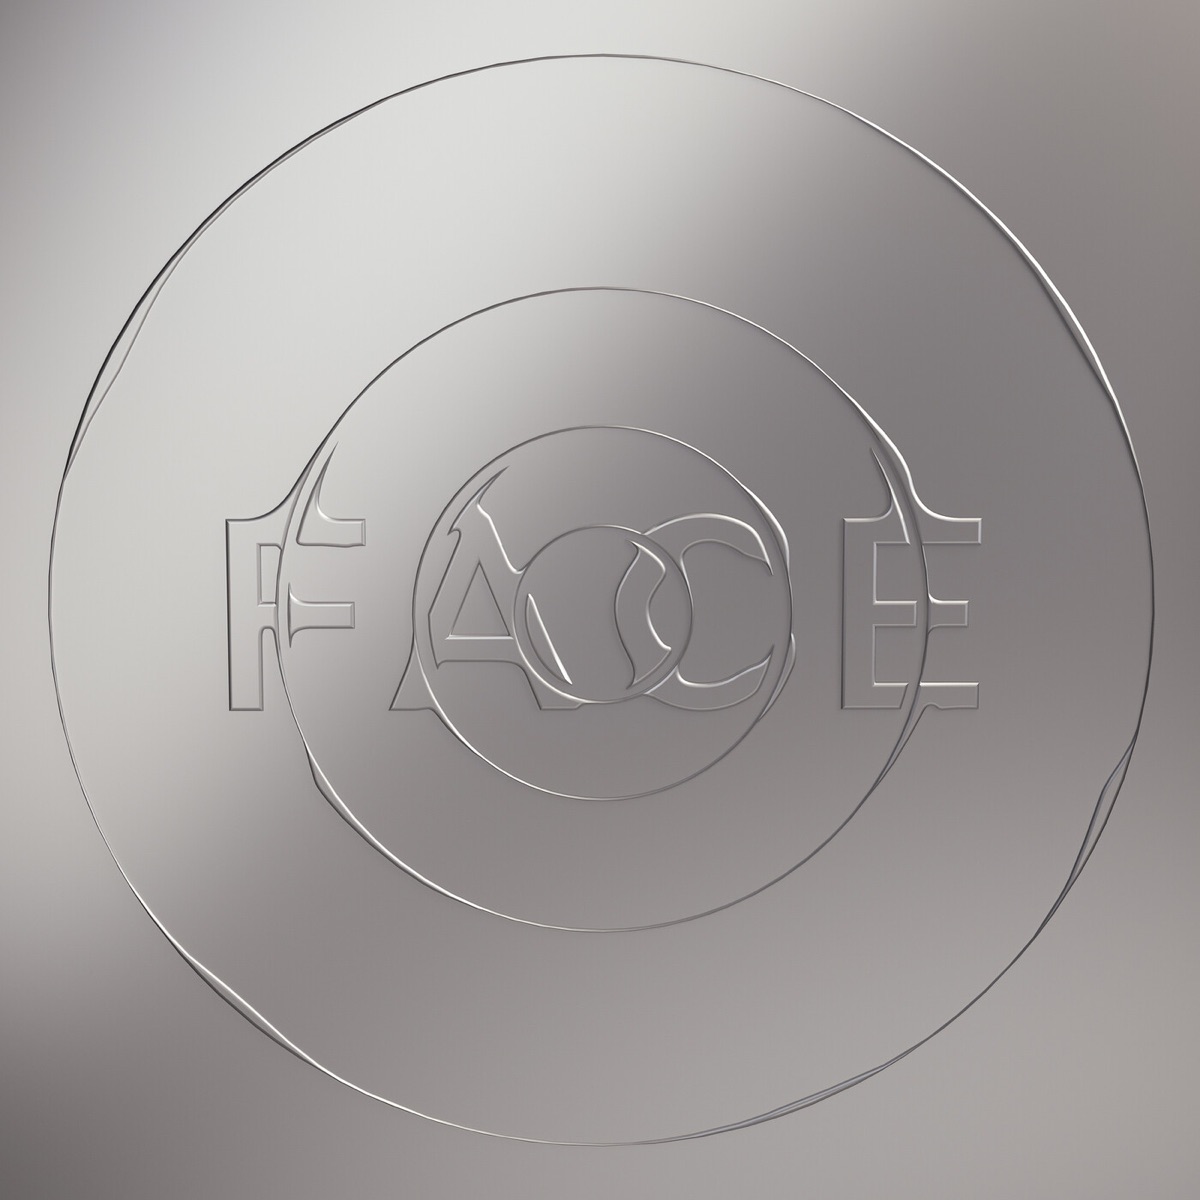 FACV - Apple Music